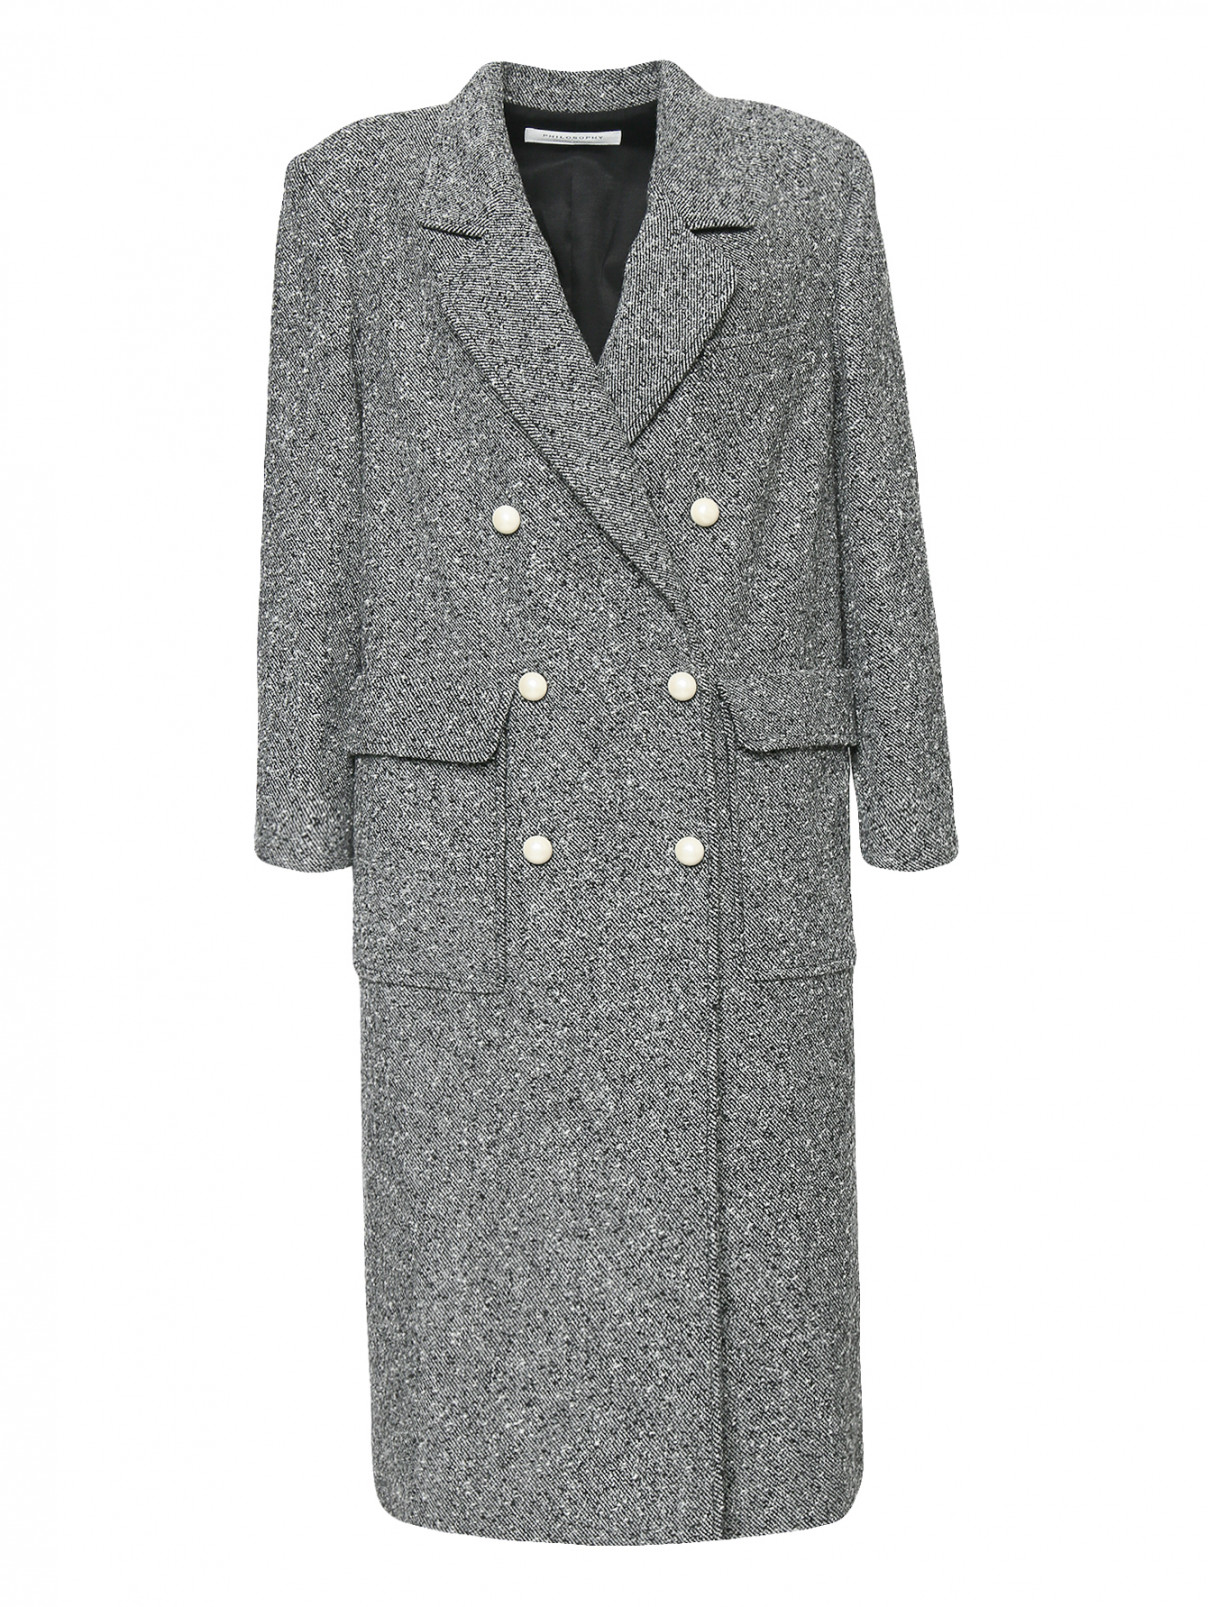 Двубортное пальто из шерсти Philosophy di Lorenzo Serafini  –  Общий вид  – Цвет:  Серый